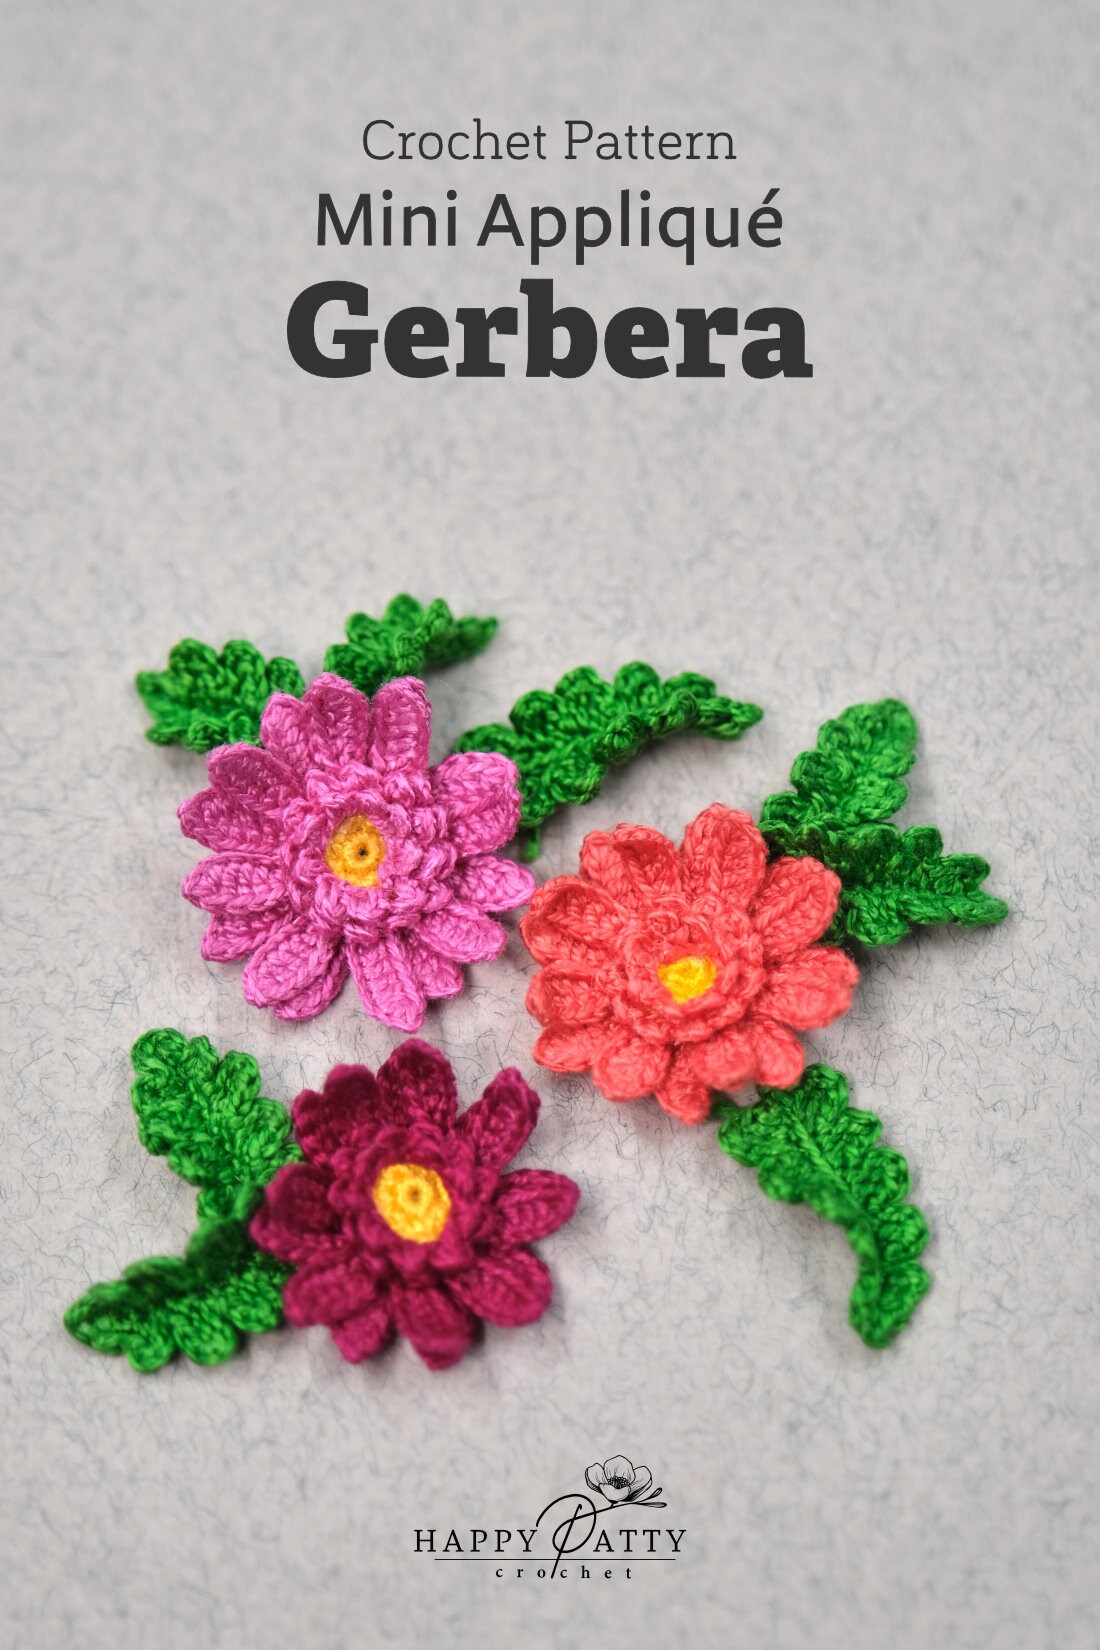 Crochet Mini Gerebra Applique Pattern - Crochet Flower Pattern for a Miniature Gerebra Applique